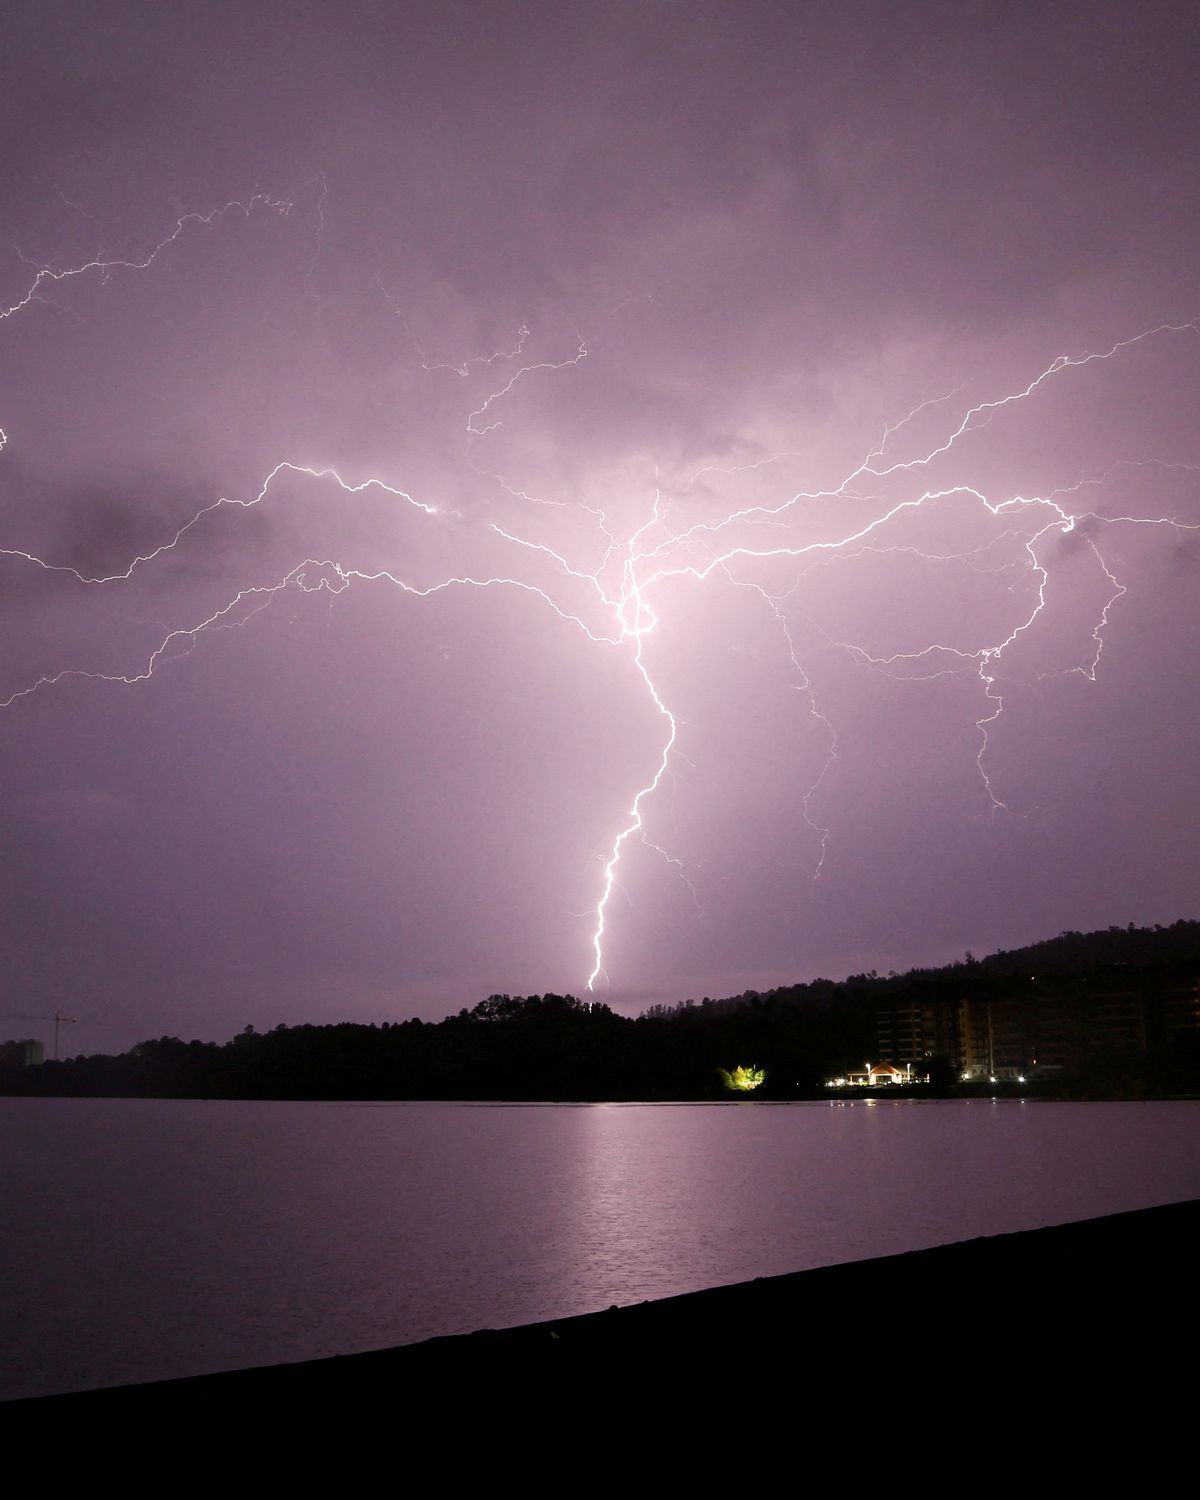 Lightning over a lake - Lightning